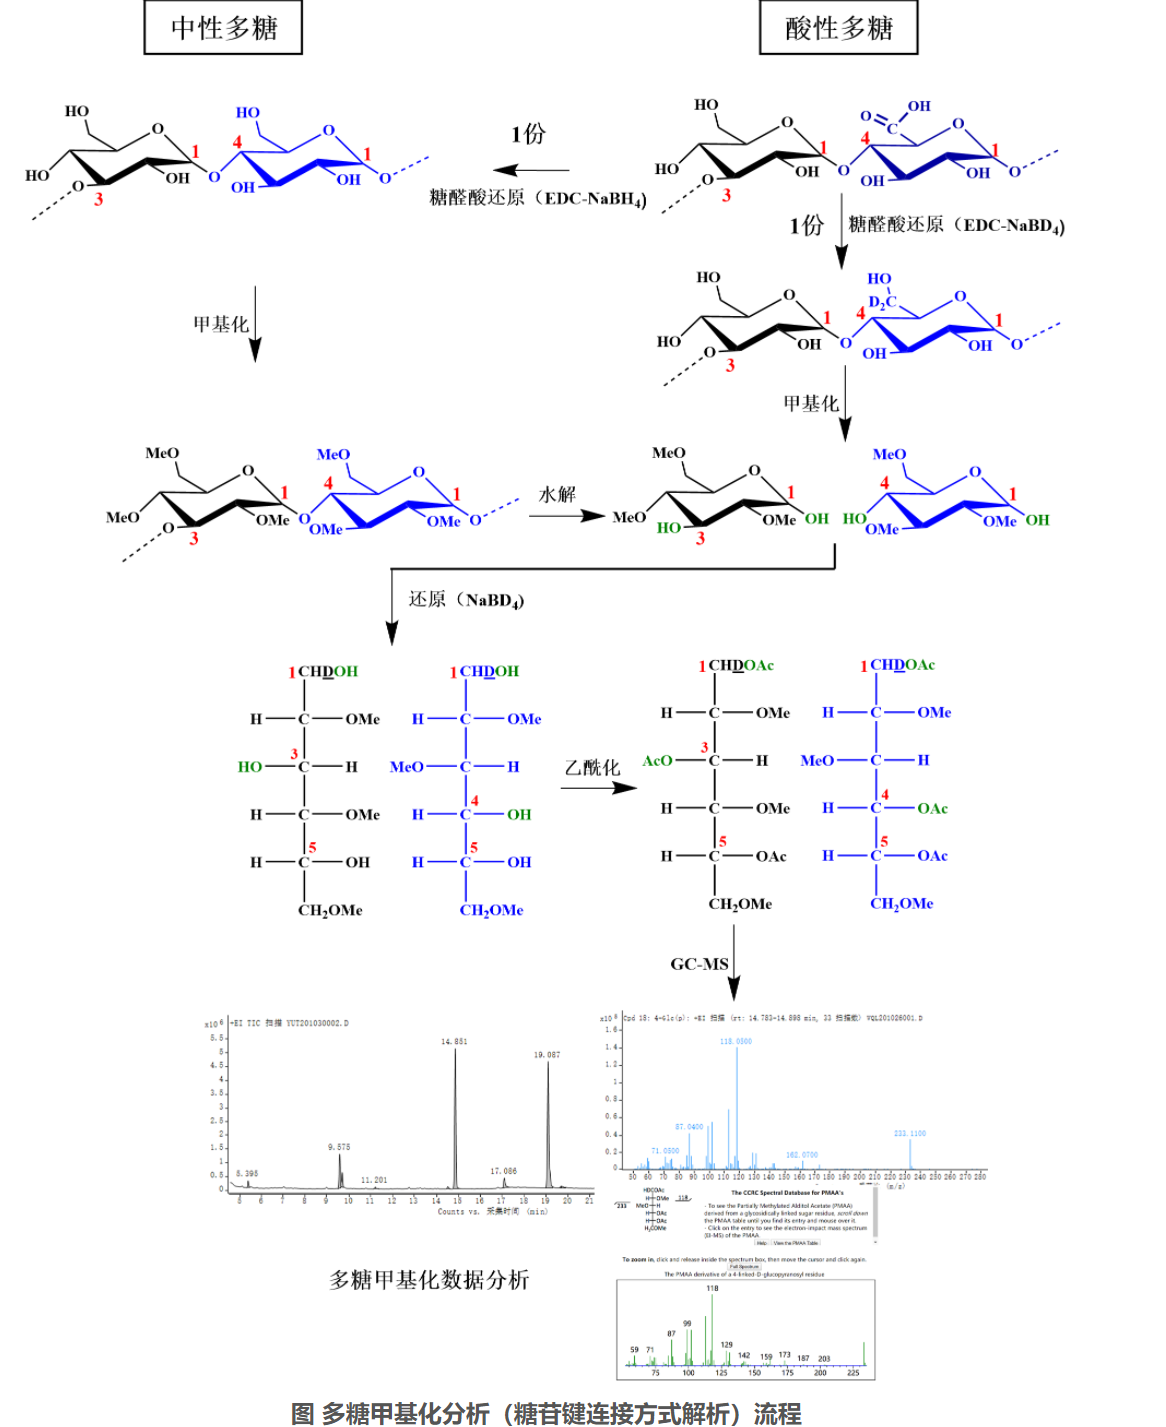 多糖甲基化分析-糖苷键解析